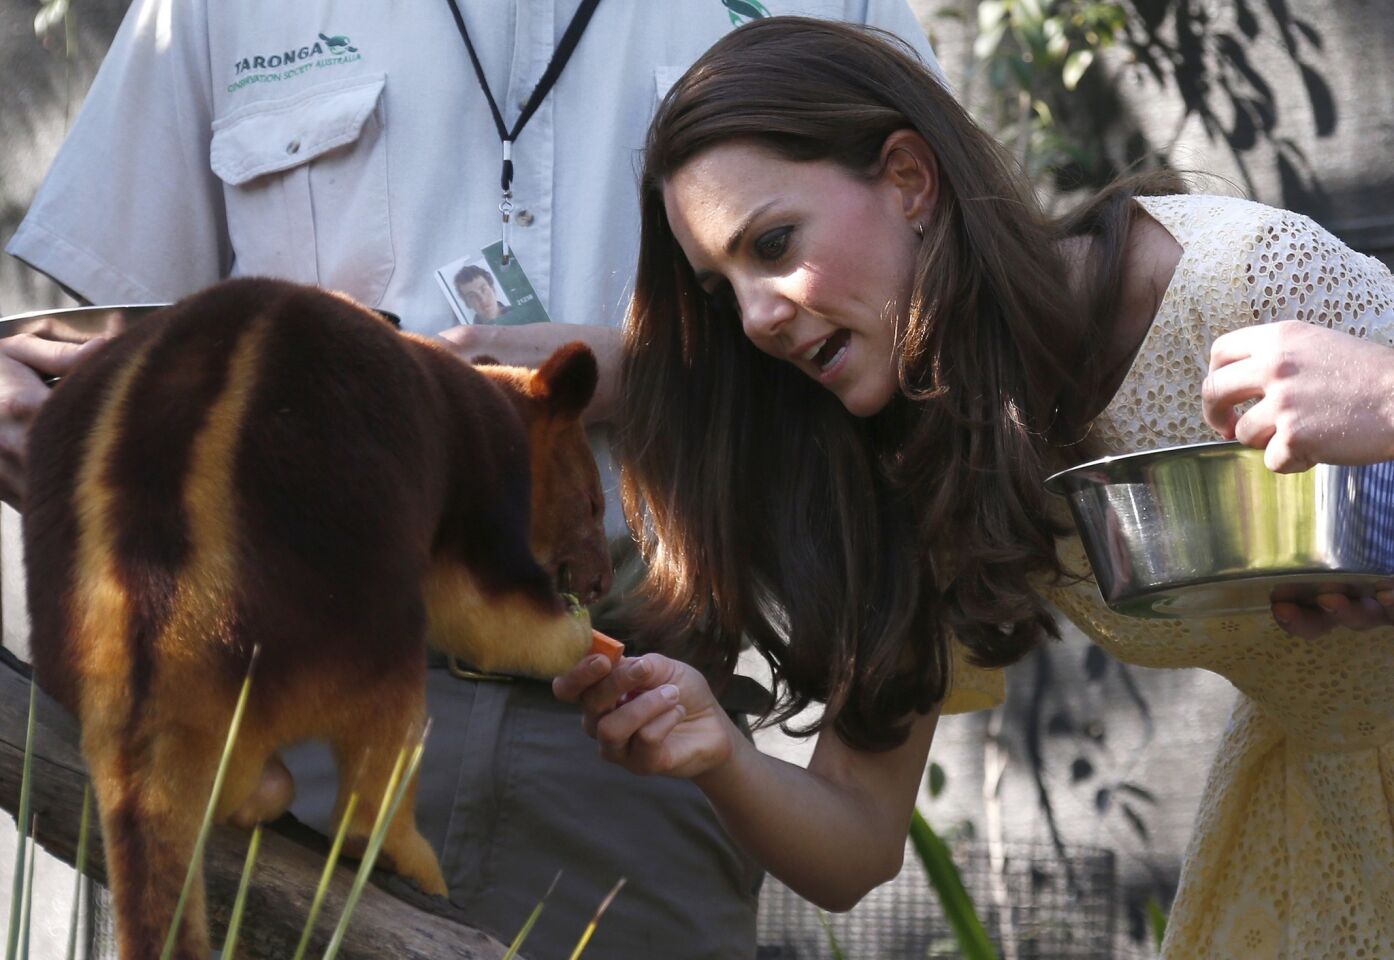 Kate feeds a tree kangaroo.